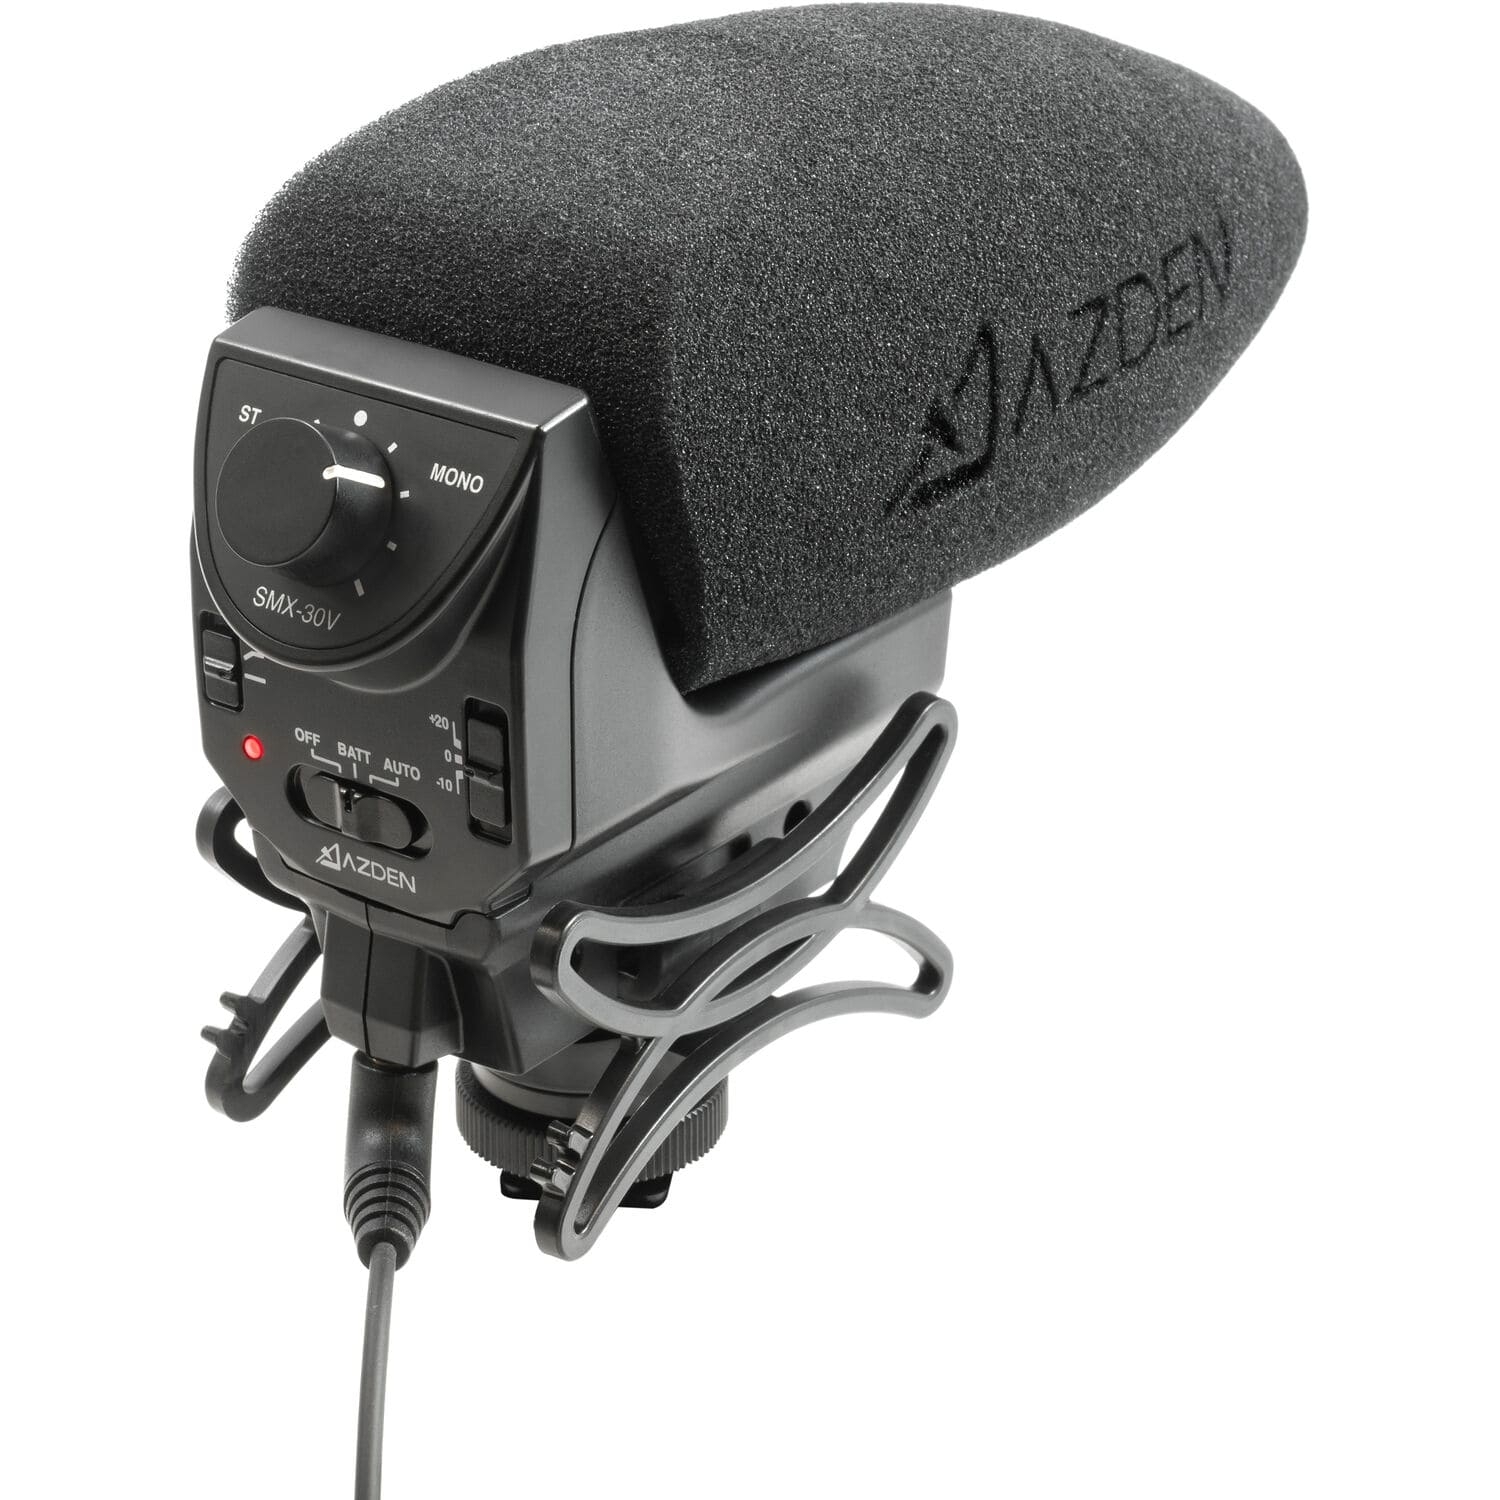 Azden SMX-30V Stereo/Mono mischbares Videomikrofon